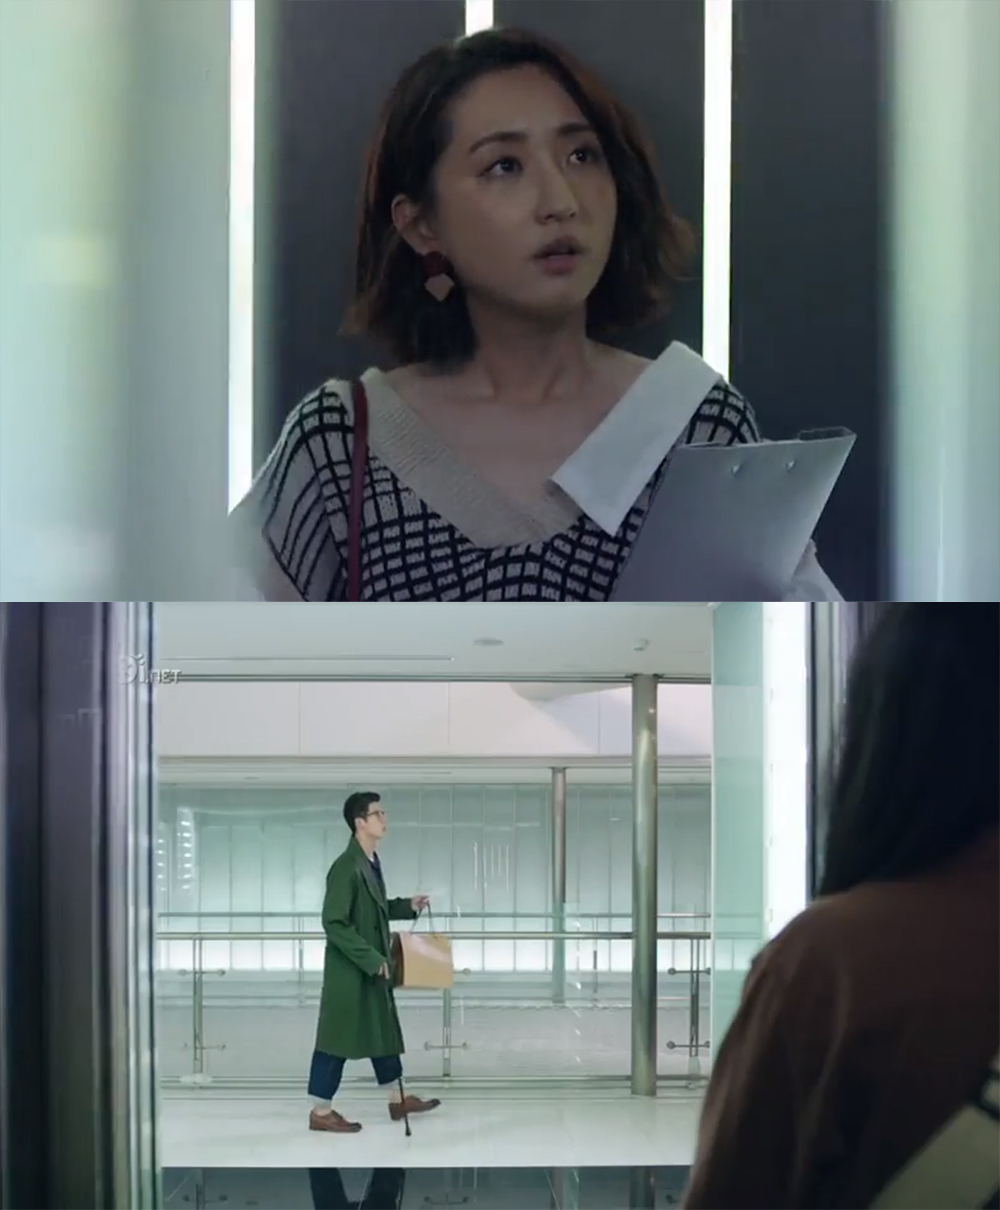  
Chỉ cách một cánh cửa thang máy nhưng hai nhân vật luôn bỏ lỡ nhau (Ảnh Weibo)